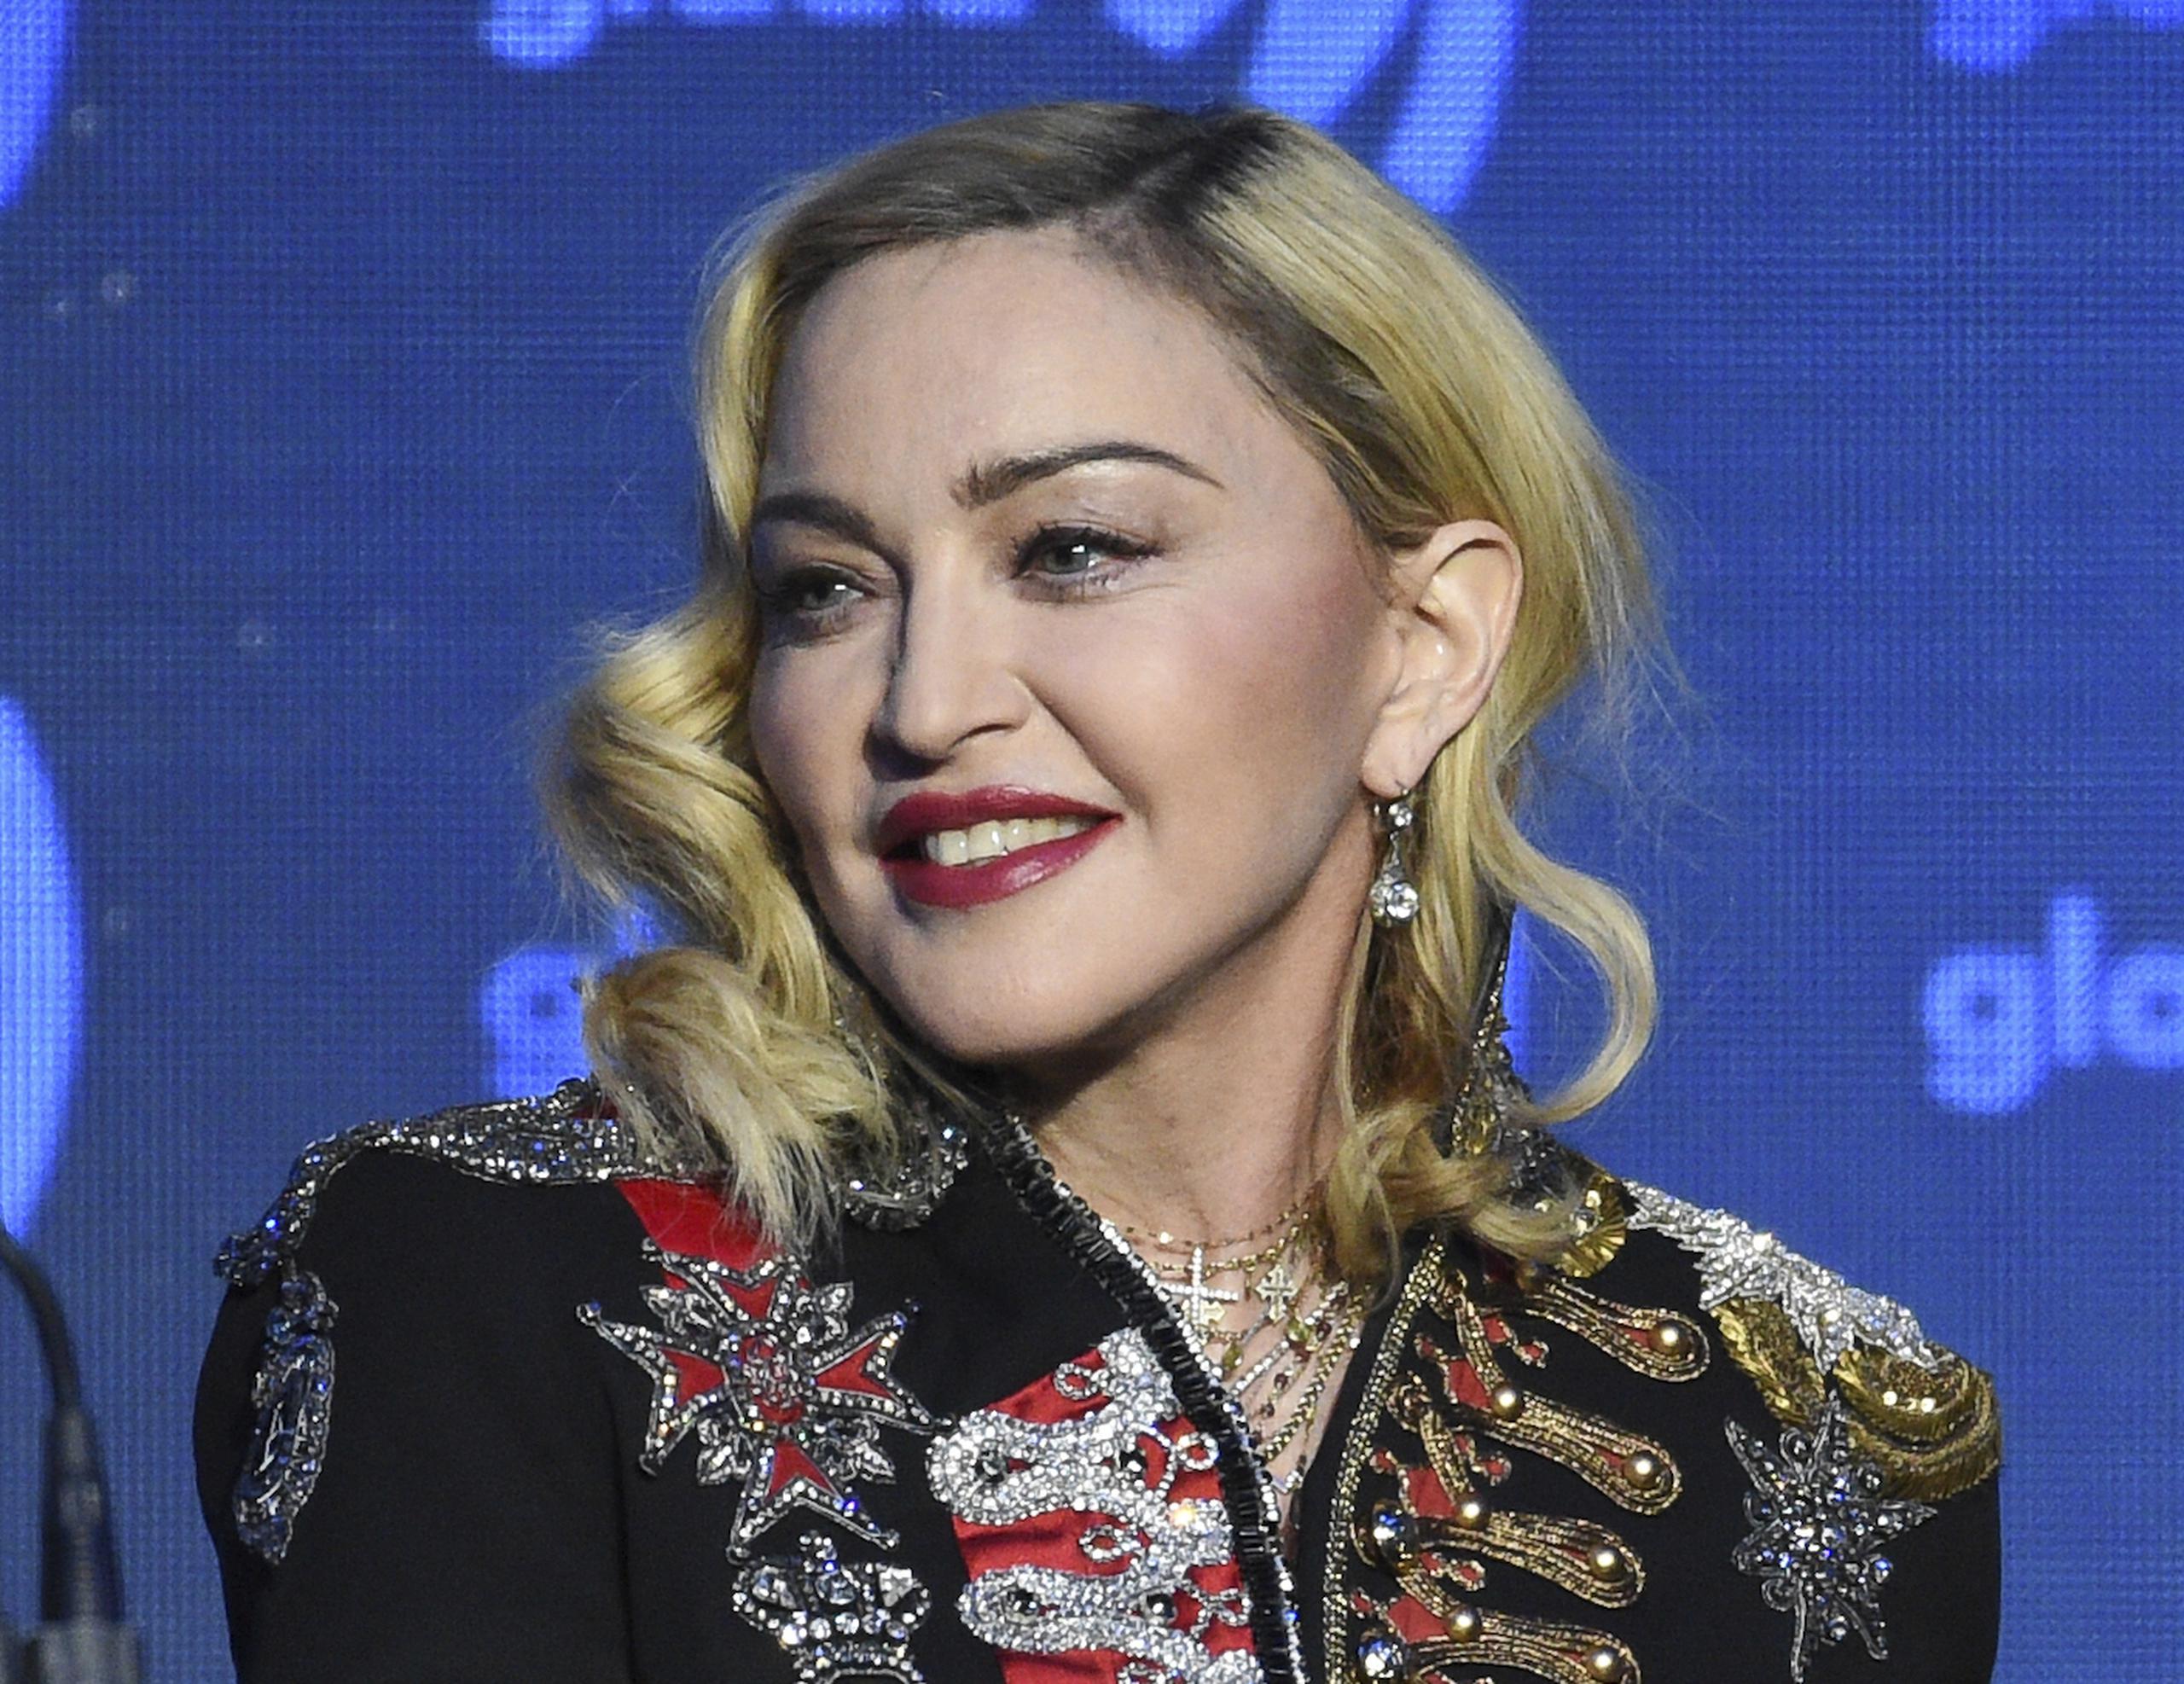 La siguiente parada de Madonna será en Brasil, donde ofrecerá un concierto masivo gratuito el próximo 4 de mayo. (Archivo)